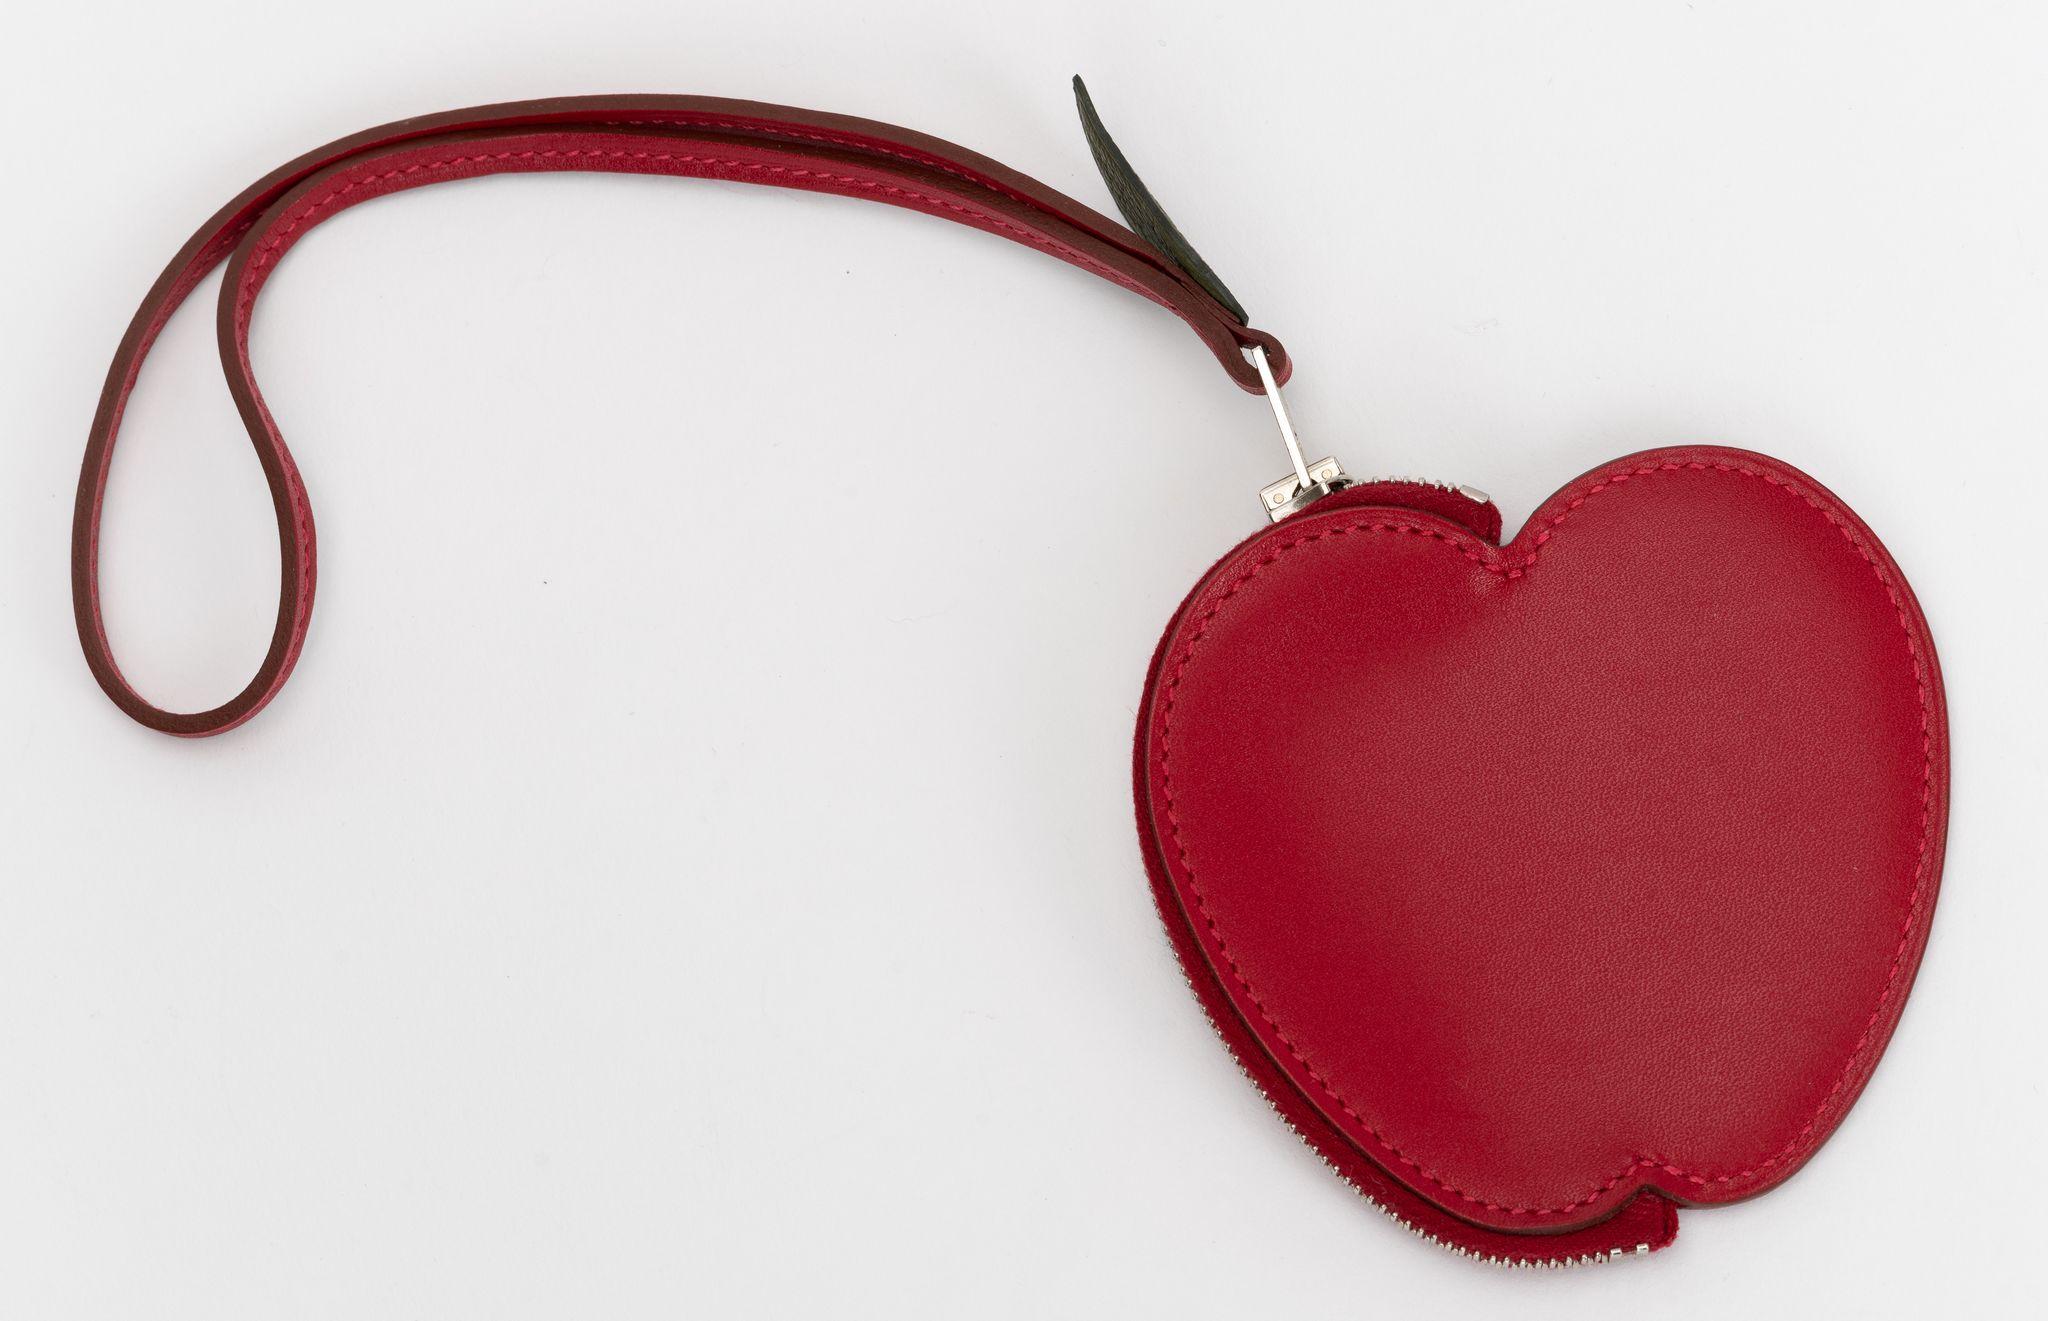 Le Tadelakt Tutti Frutti Pomme Coin Purse Wristlet in Rouge Vif d'Hermes est un petit sac à charme qui peut également servir de porte-monnaie. Ce porte-monnaie en forme de pomme est fabriqué en cuir de veau rouge vif. La poignée à fermeture éclair